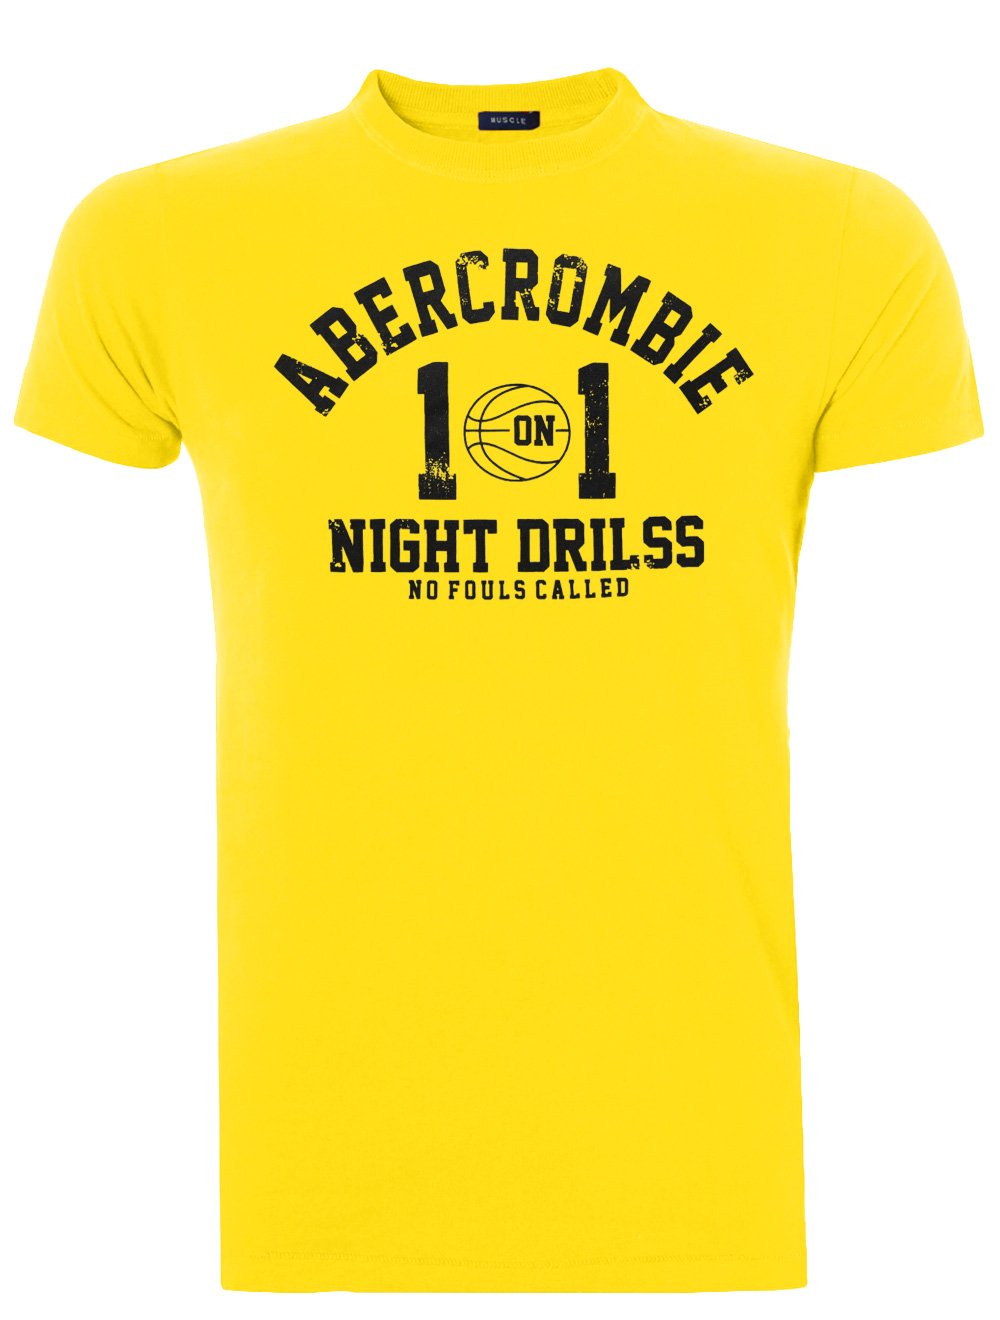 Camiseta Abercrombie Masculina Muscle Basket Night Drills Amarela